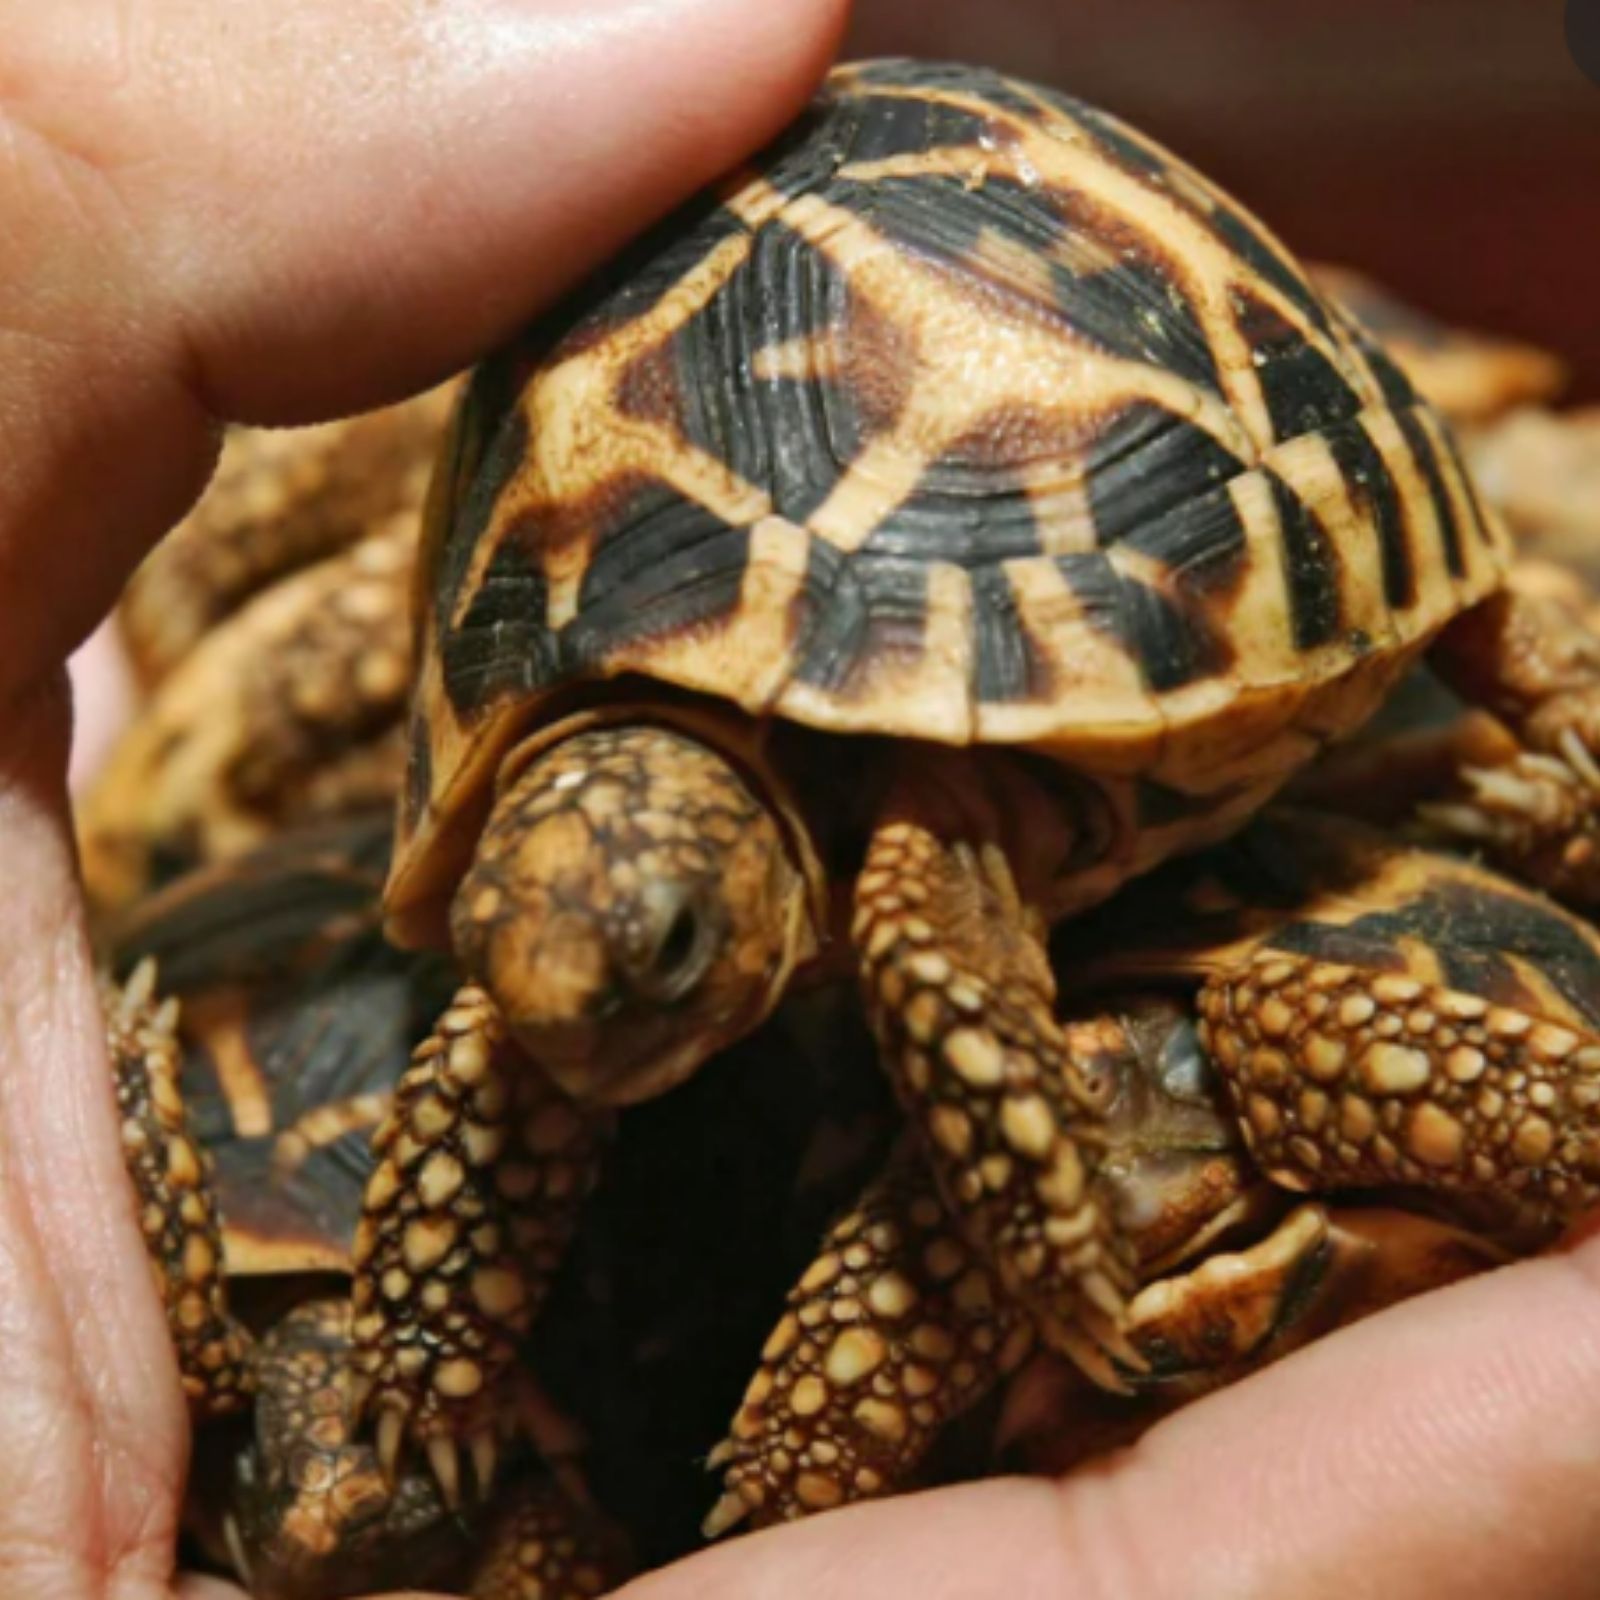 Adult Tortoise